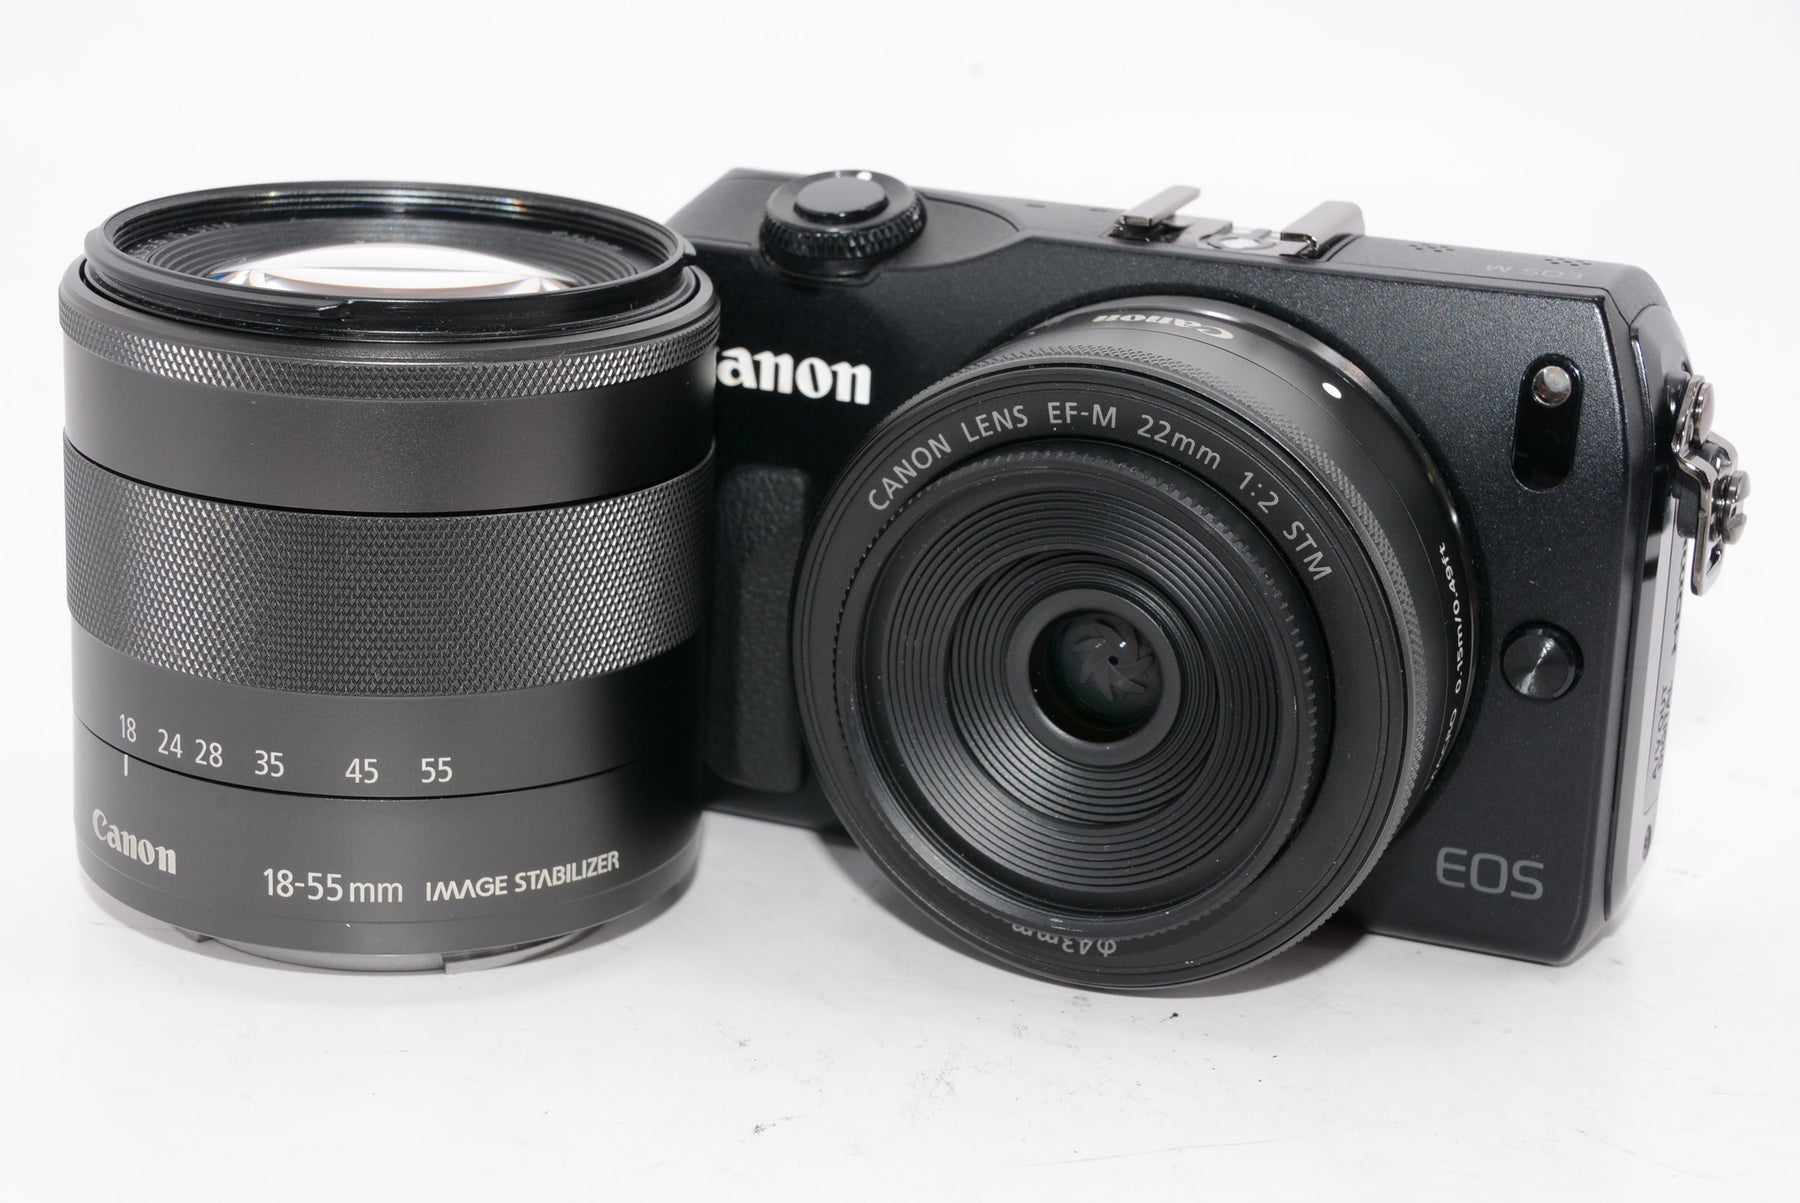 【外観特上級】Canon ミラーレス一眼カメラ EOS M3 ダブルレンズキット(ブラック) EF-M18-55mm F3.5-5.6 IS STM EF-M22mm F2 STM 付属 EOSM3BK-WLK